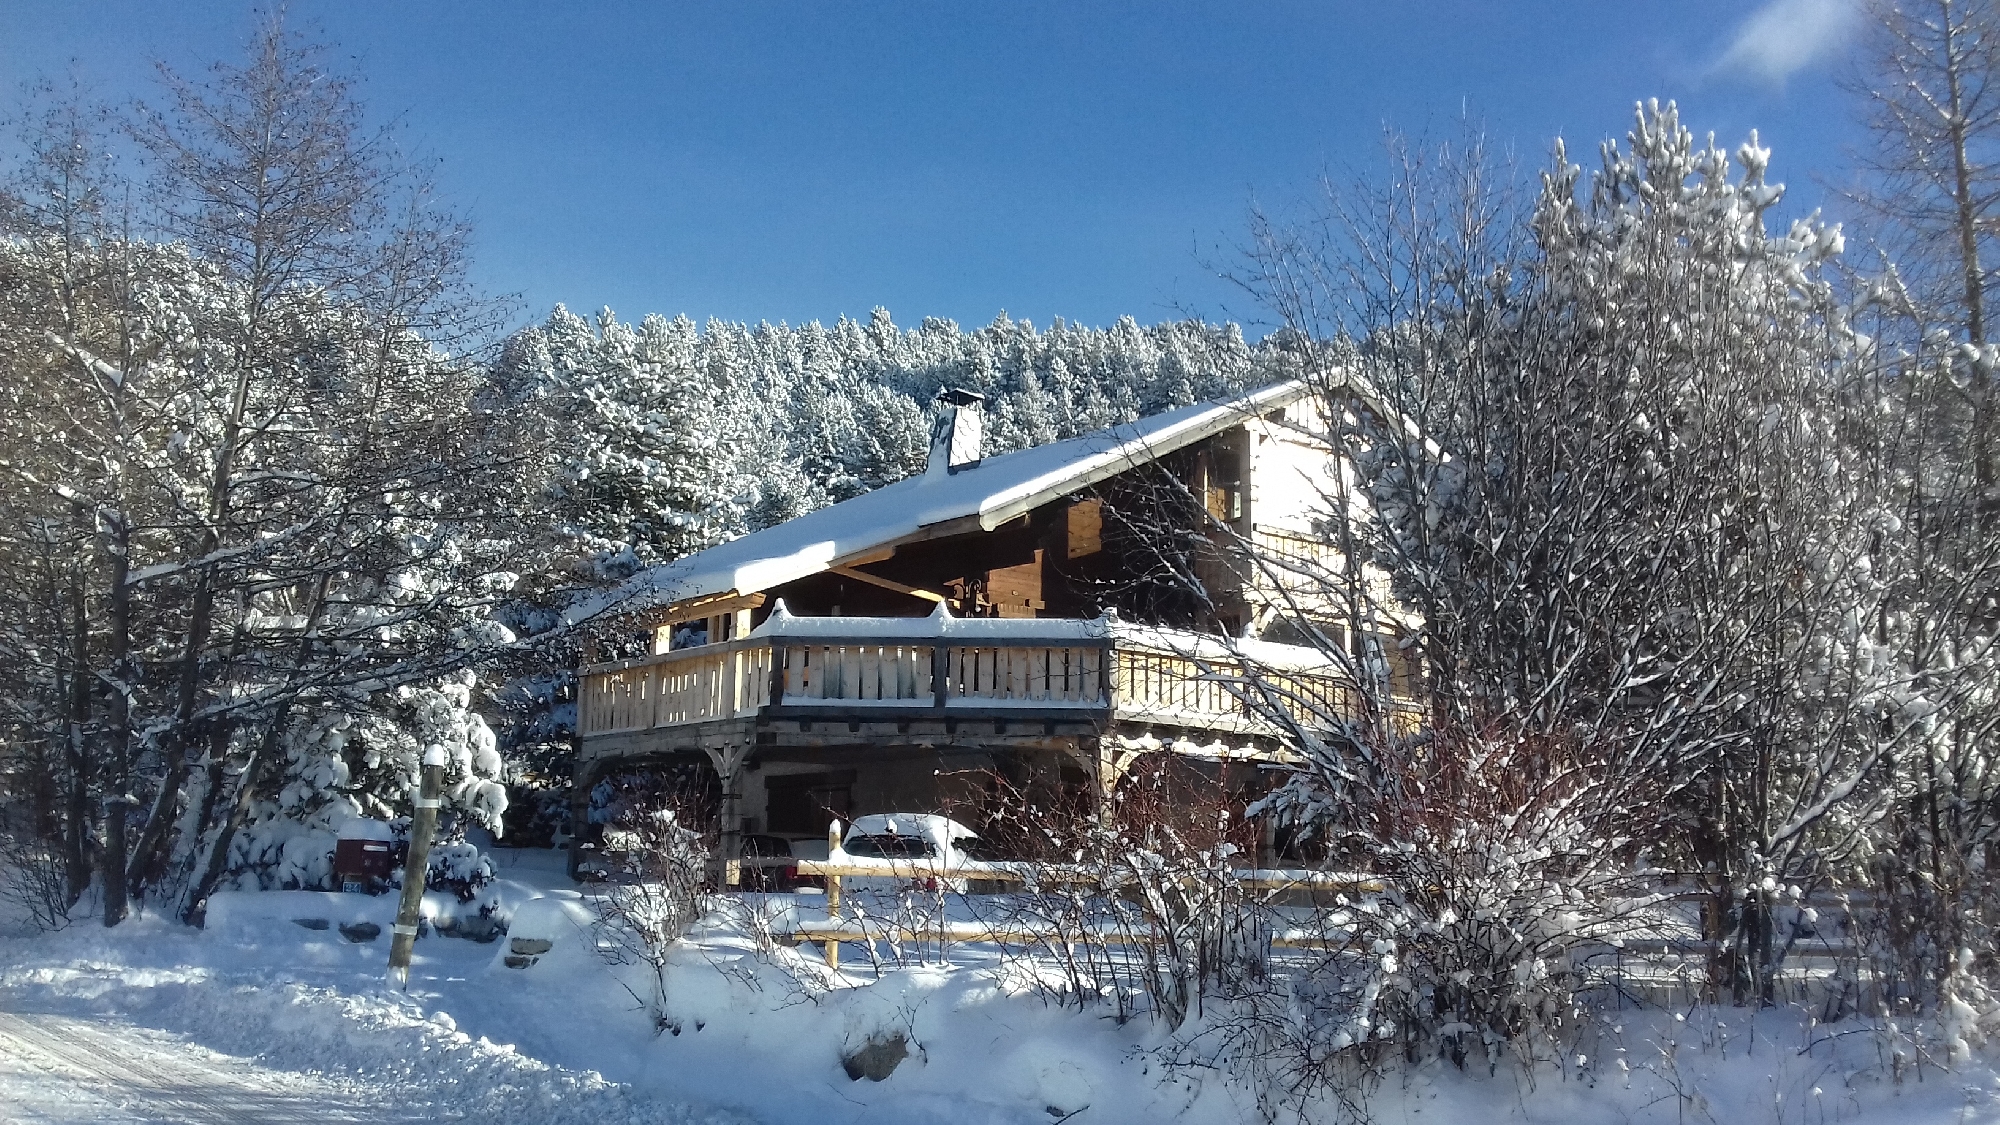 xalet Cartier, ARI, allotjament rural a Bolquera Pirineus 2000